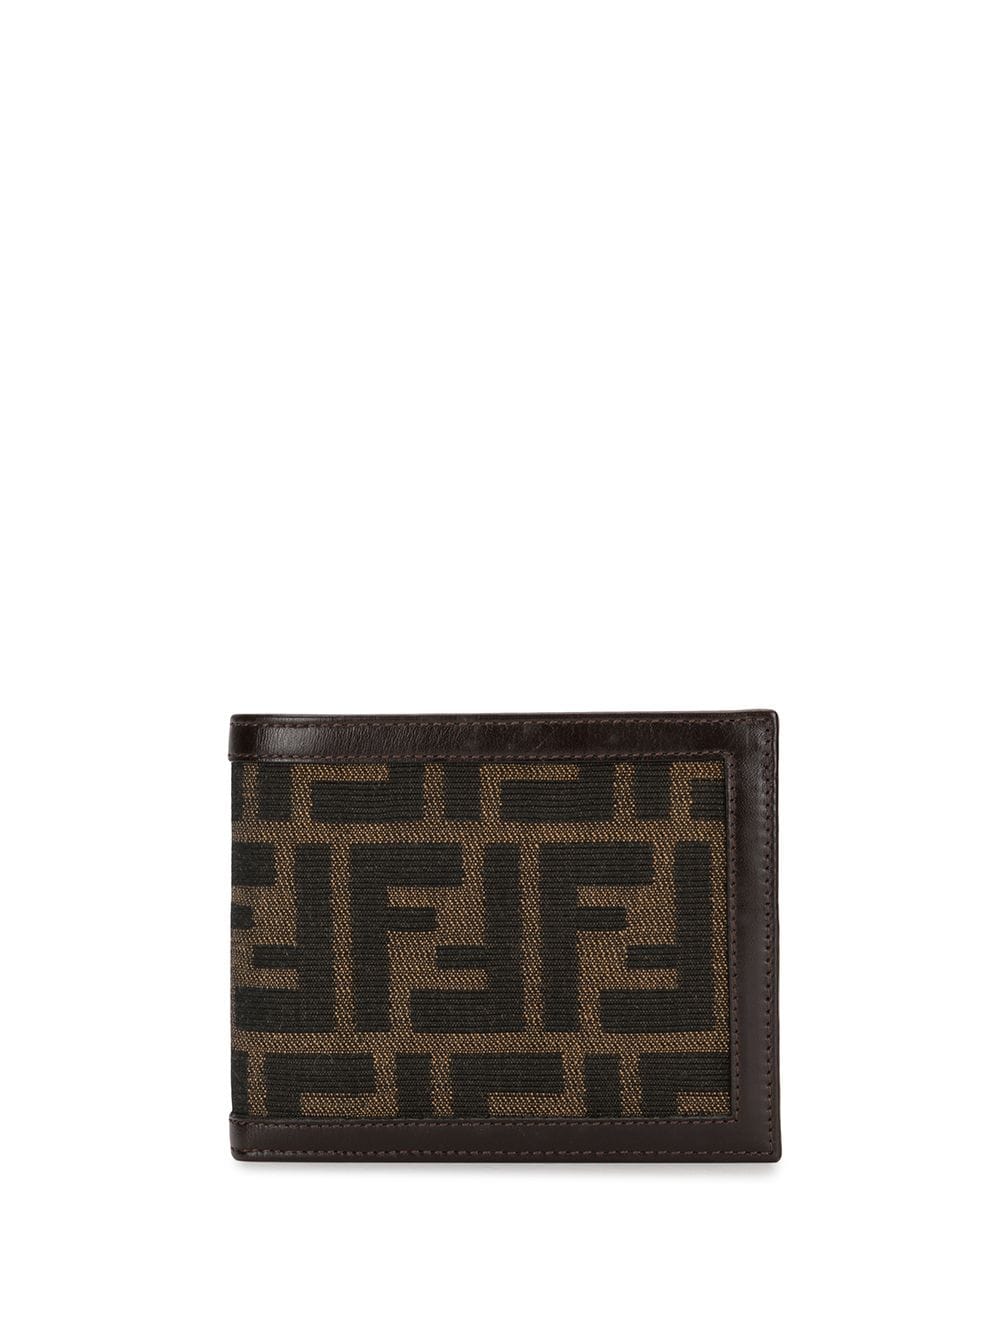 фото Fendi pre-owned бумажник с узором zucca